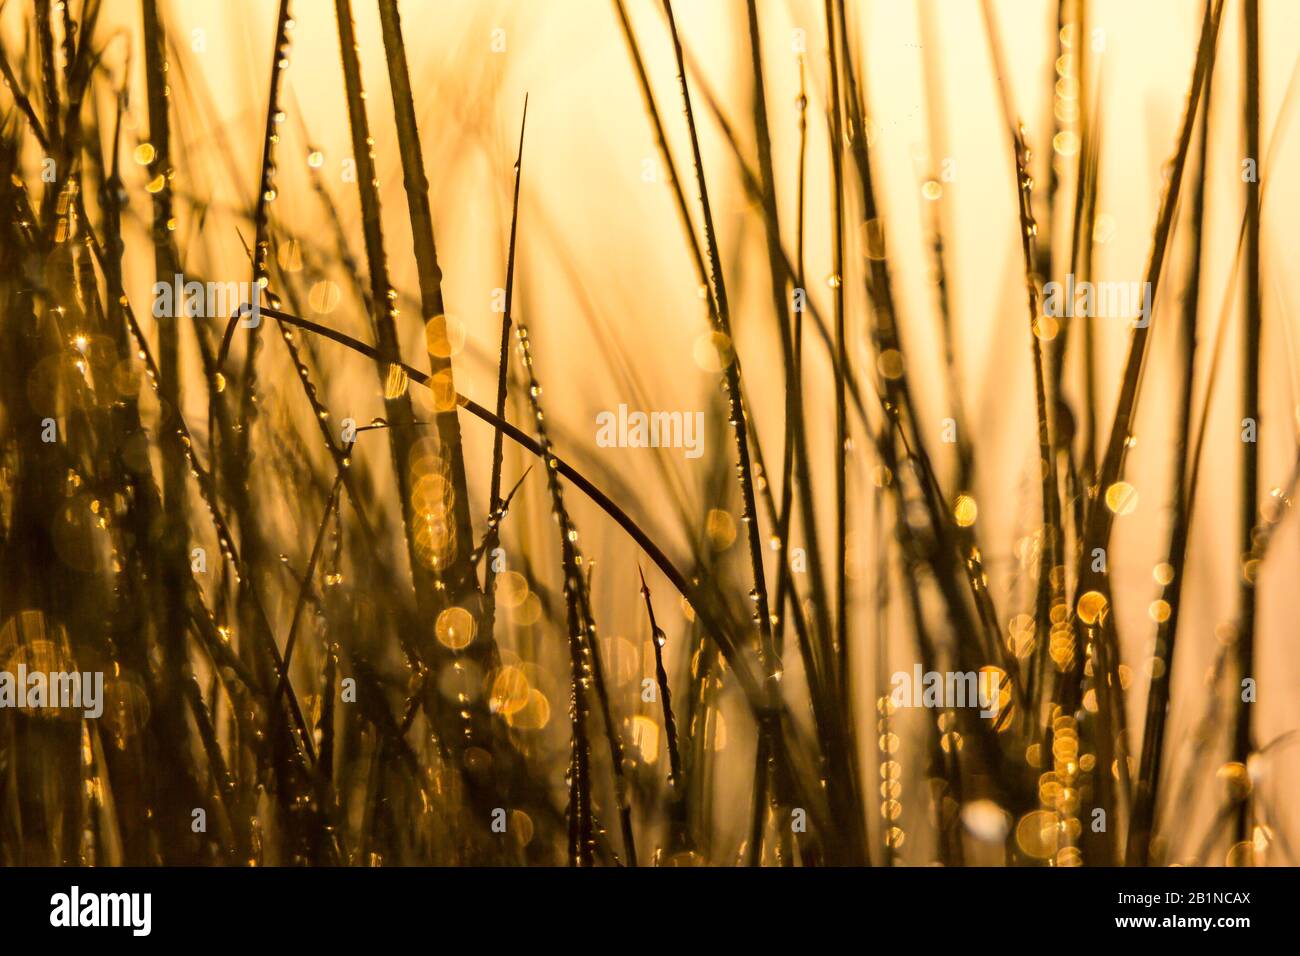 Dettagli della rugiada nella vegetazione alla luce dorata dell'alba a Ria de Aveiro (Portogallo). Foto Stock